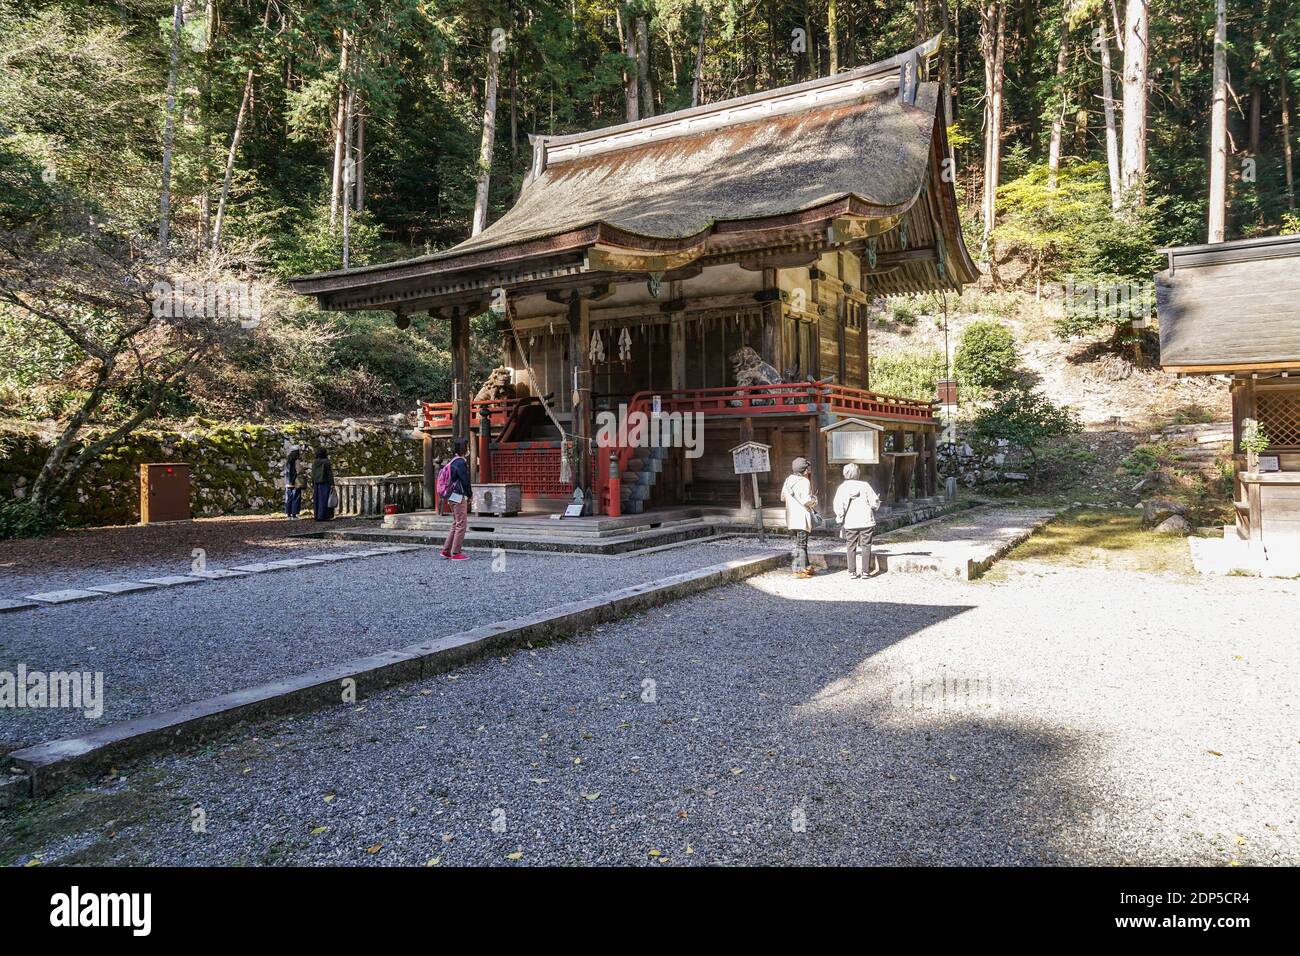 Hiyoshi Taisha, also known as Hiei Taisha, Shinto Shrine in Otsu, Shiga, Japan, at the foot of Mount Hiei Stock Photo